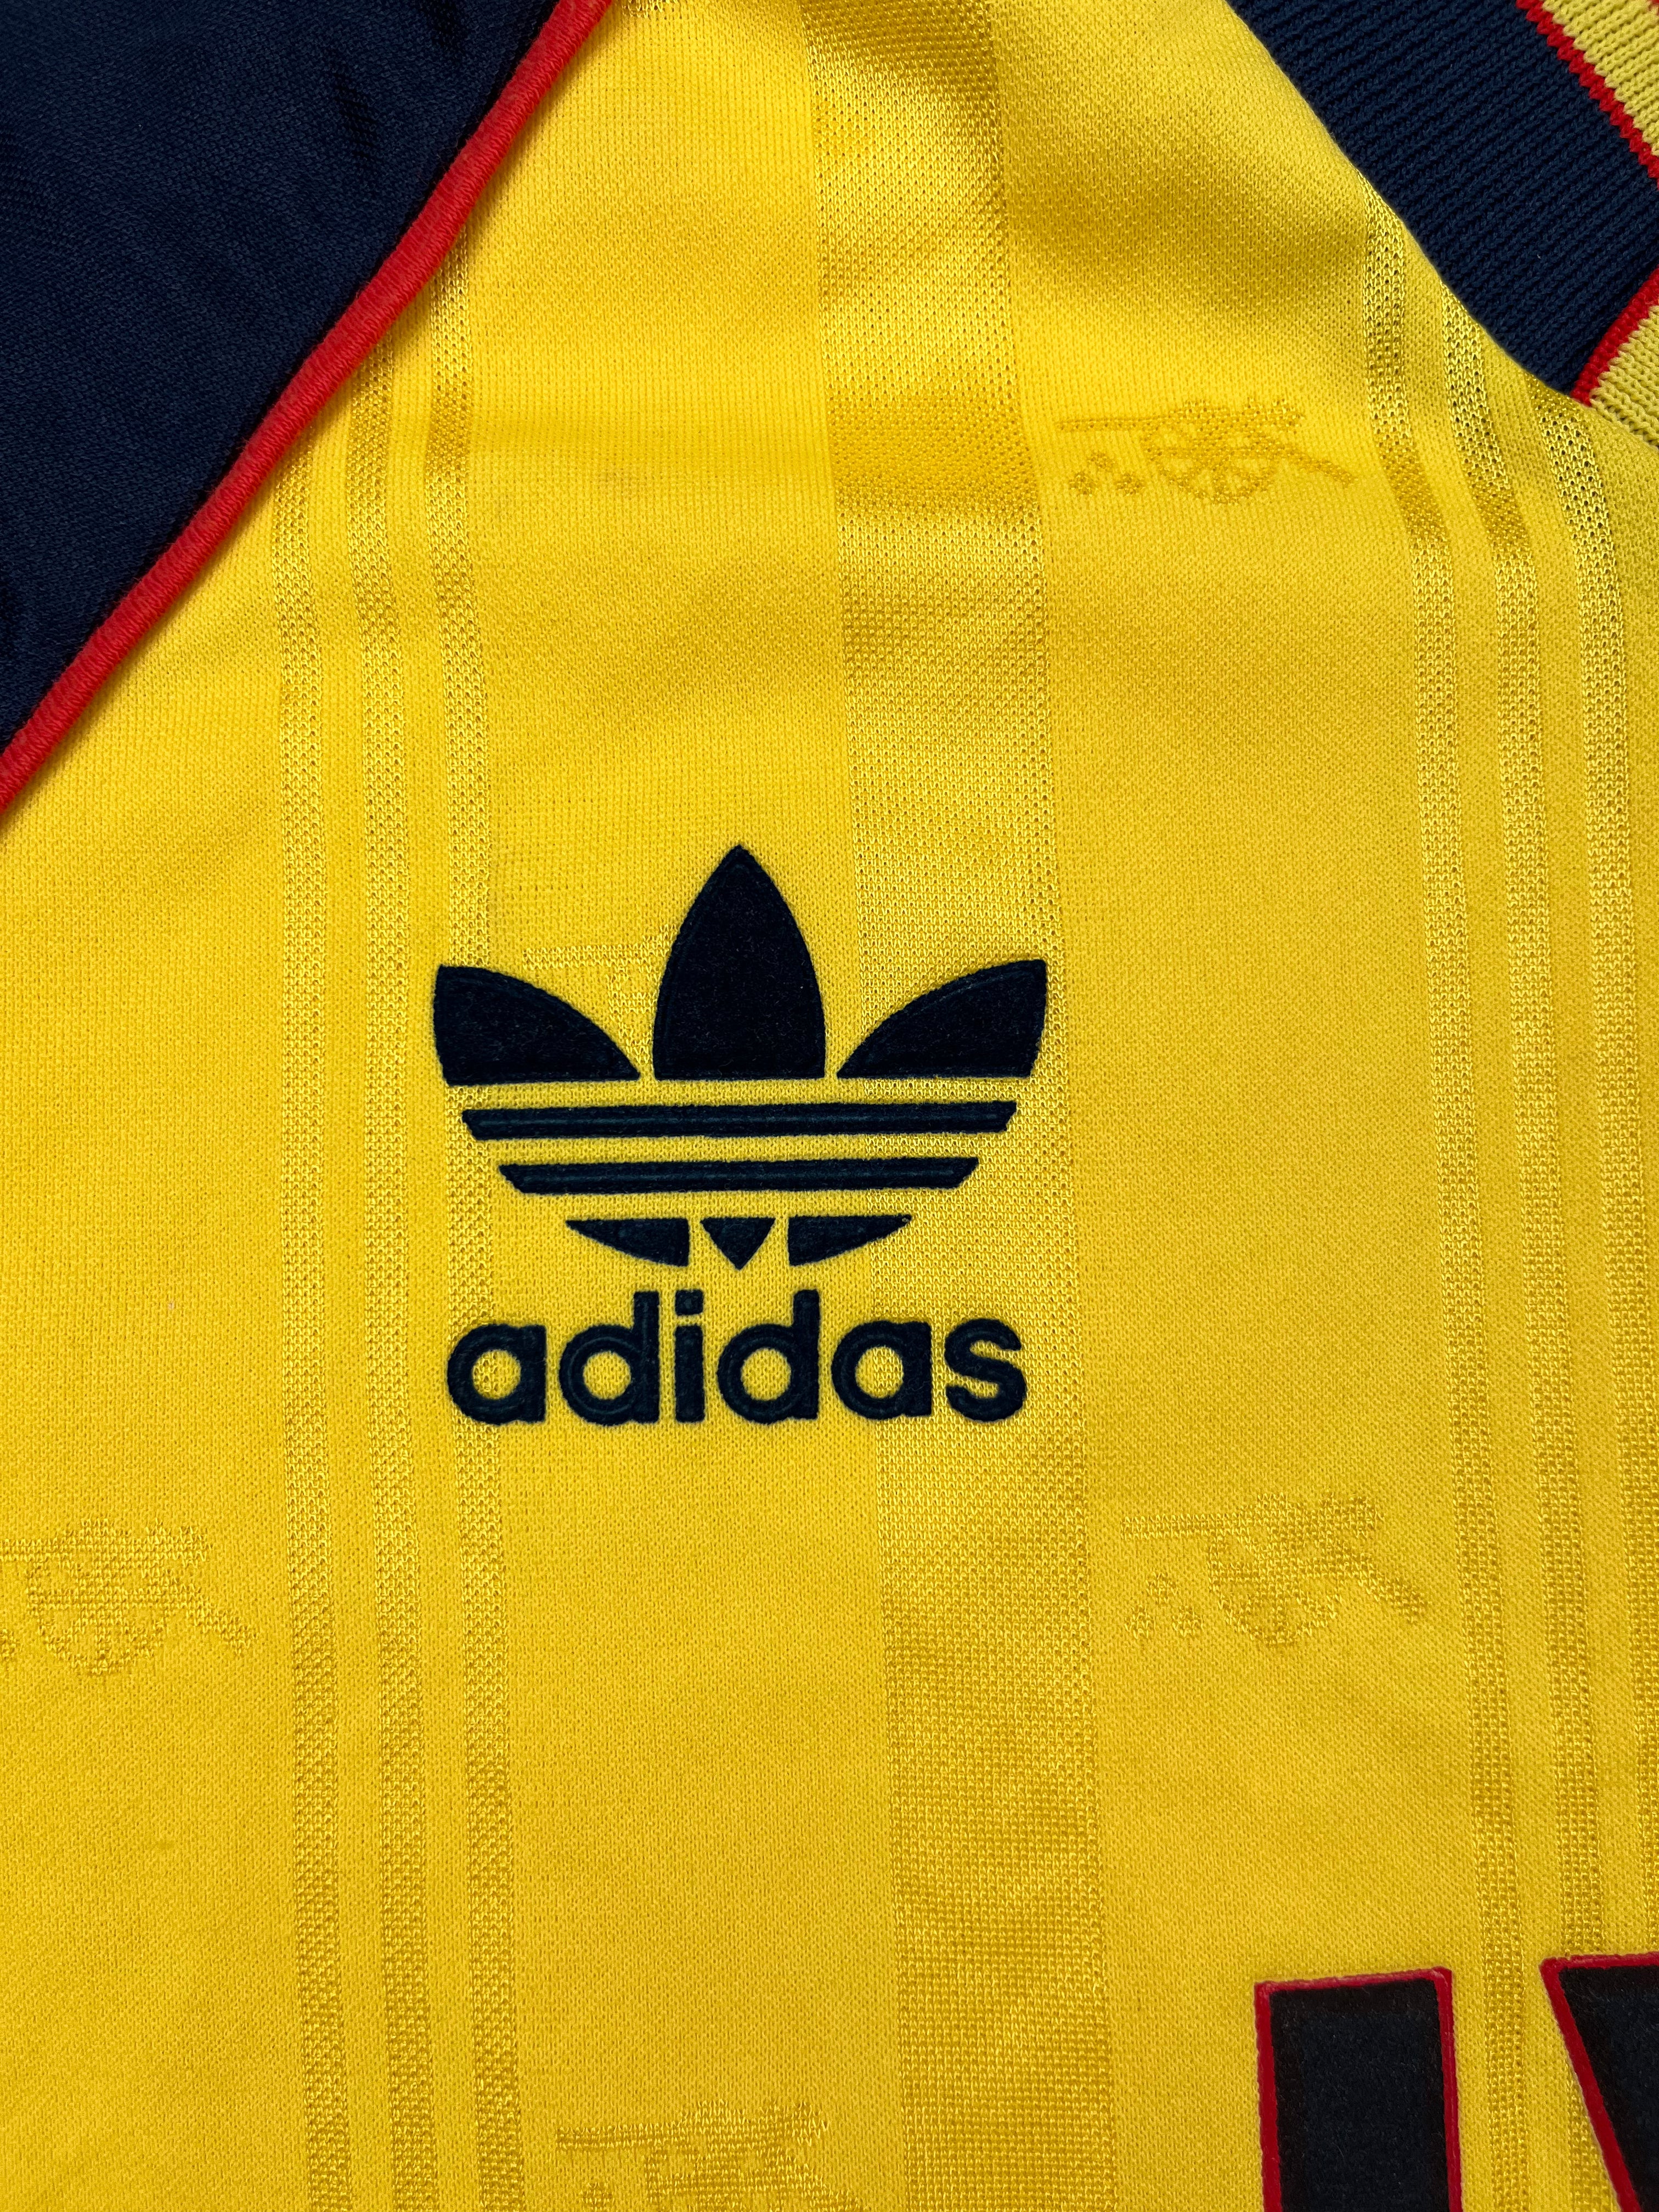 1989/91 Arsenal Away Shirt (S) 9/10